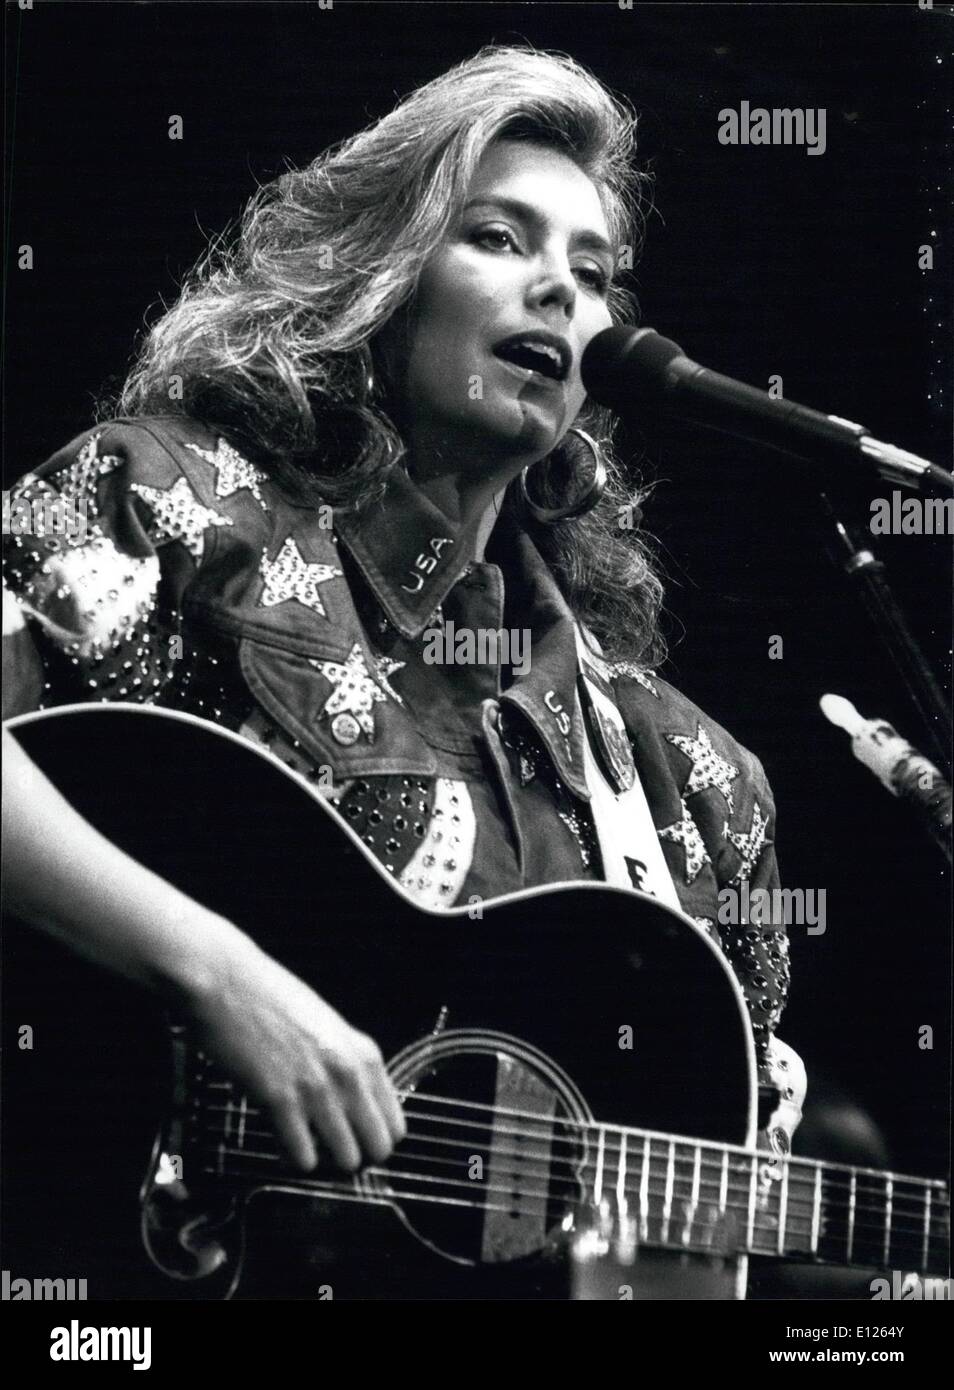 Juin 06, 1989 - Emmylou Harris ; pour votre pays déclarants ; American singer Emmylou Harries à la 5e Swiss Alps Country Music Festival à Grindewald 17 juin. Banque D'Images